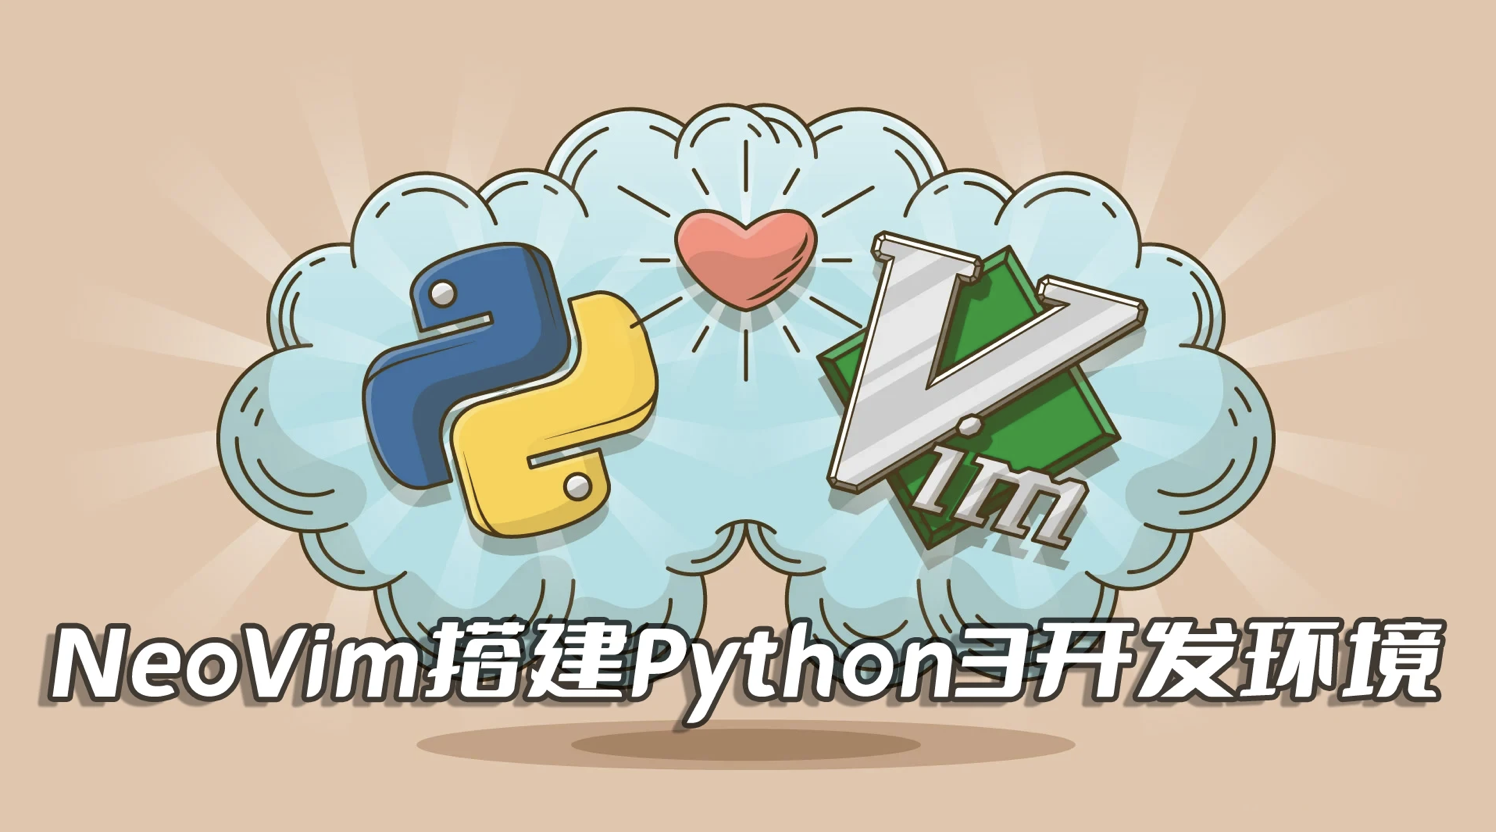 上古神兵,先天至宝,Win11平台安装和配置NeoVim0.8.2编辑器搭建Python3开发环境(2023最新攻略)